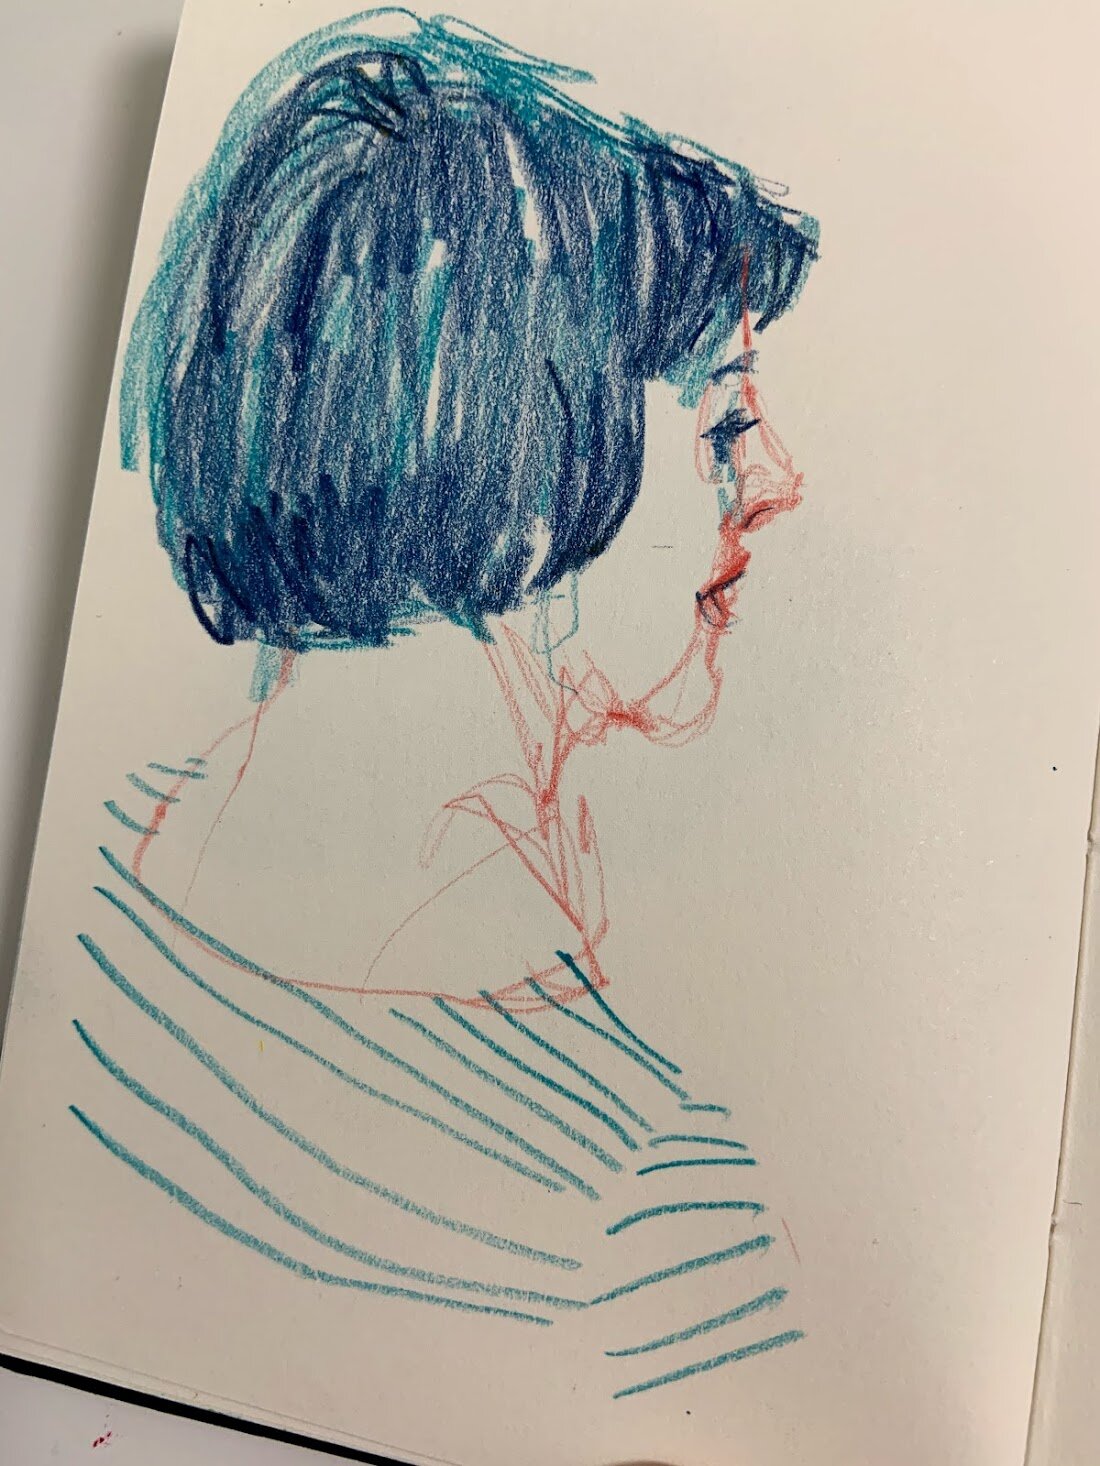  sketching during meetings 